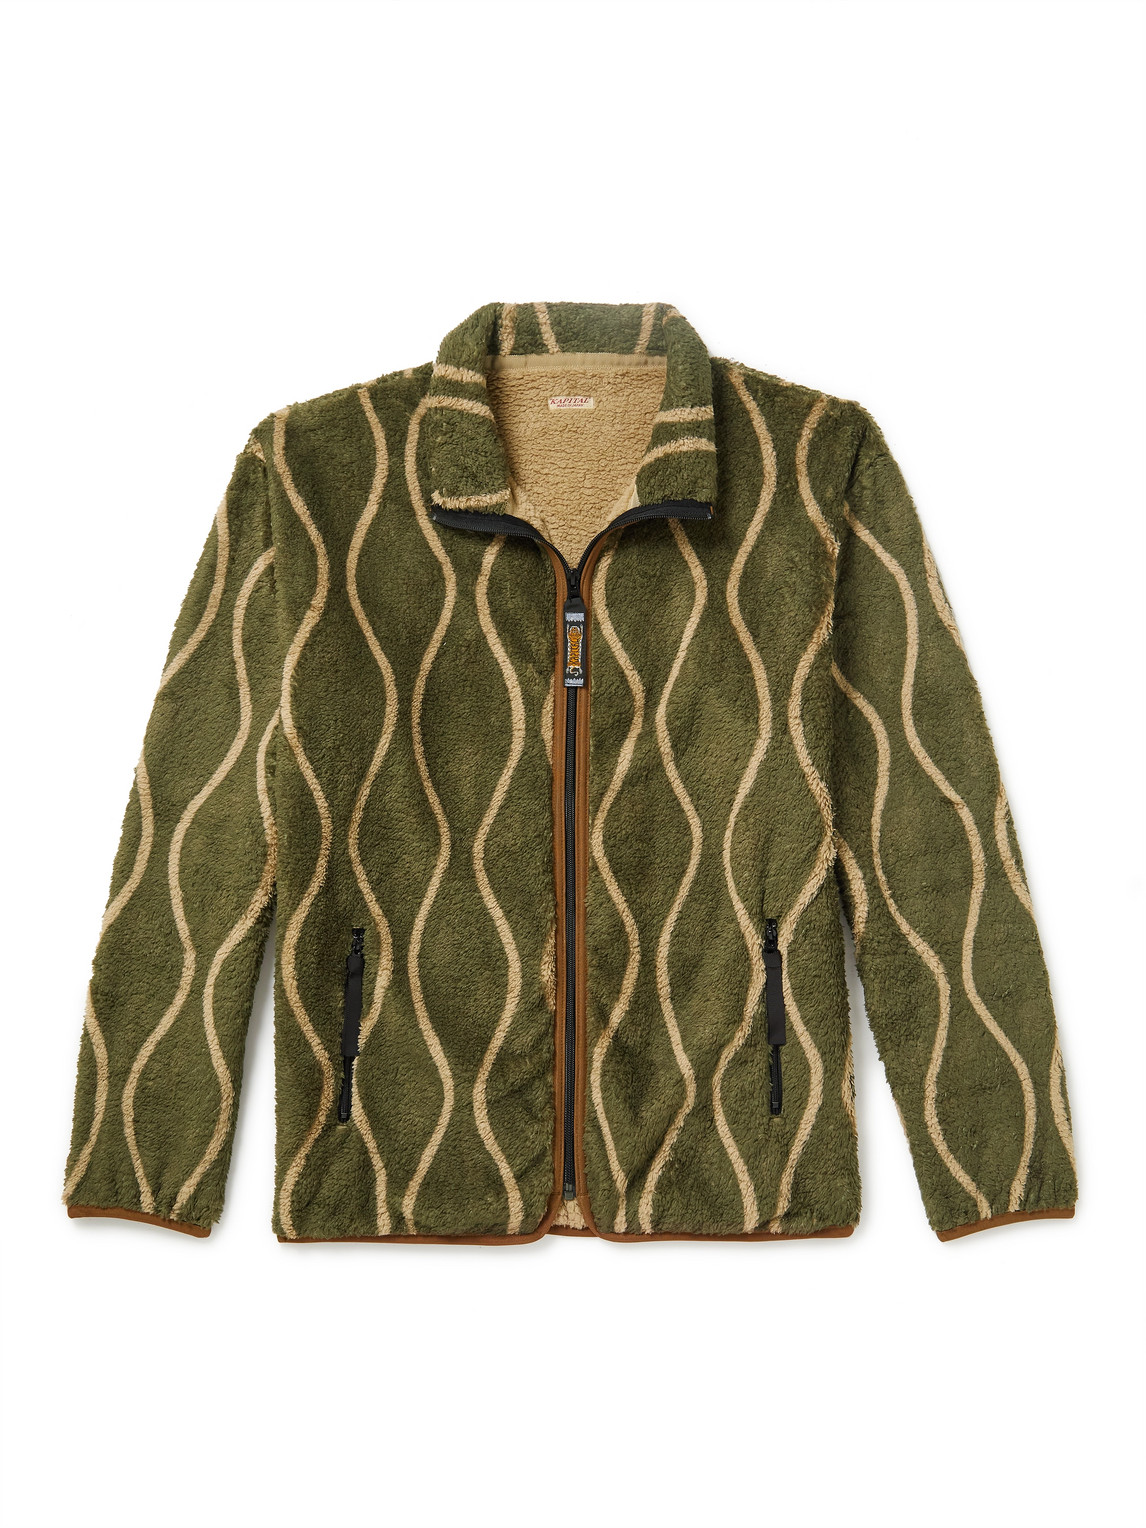 JW Anderson Jacquard Fleece Jacket in Green for Men